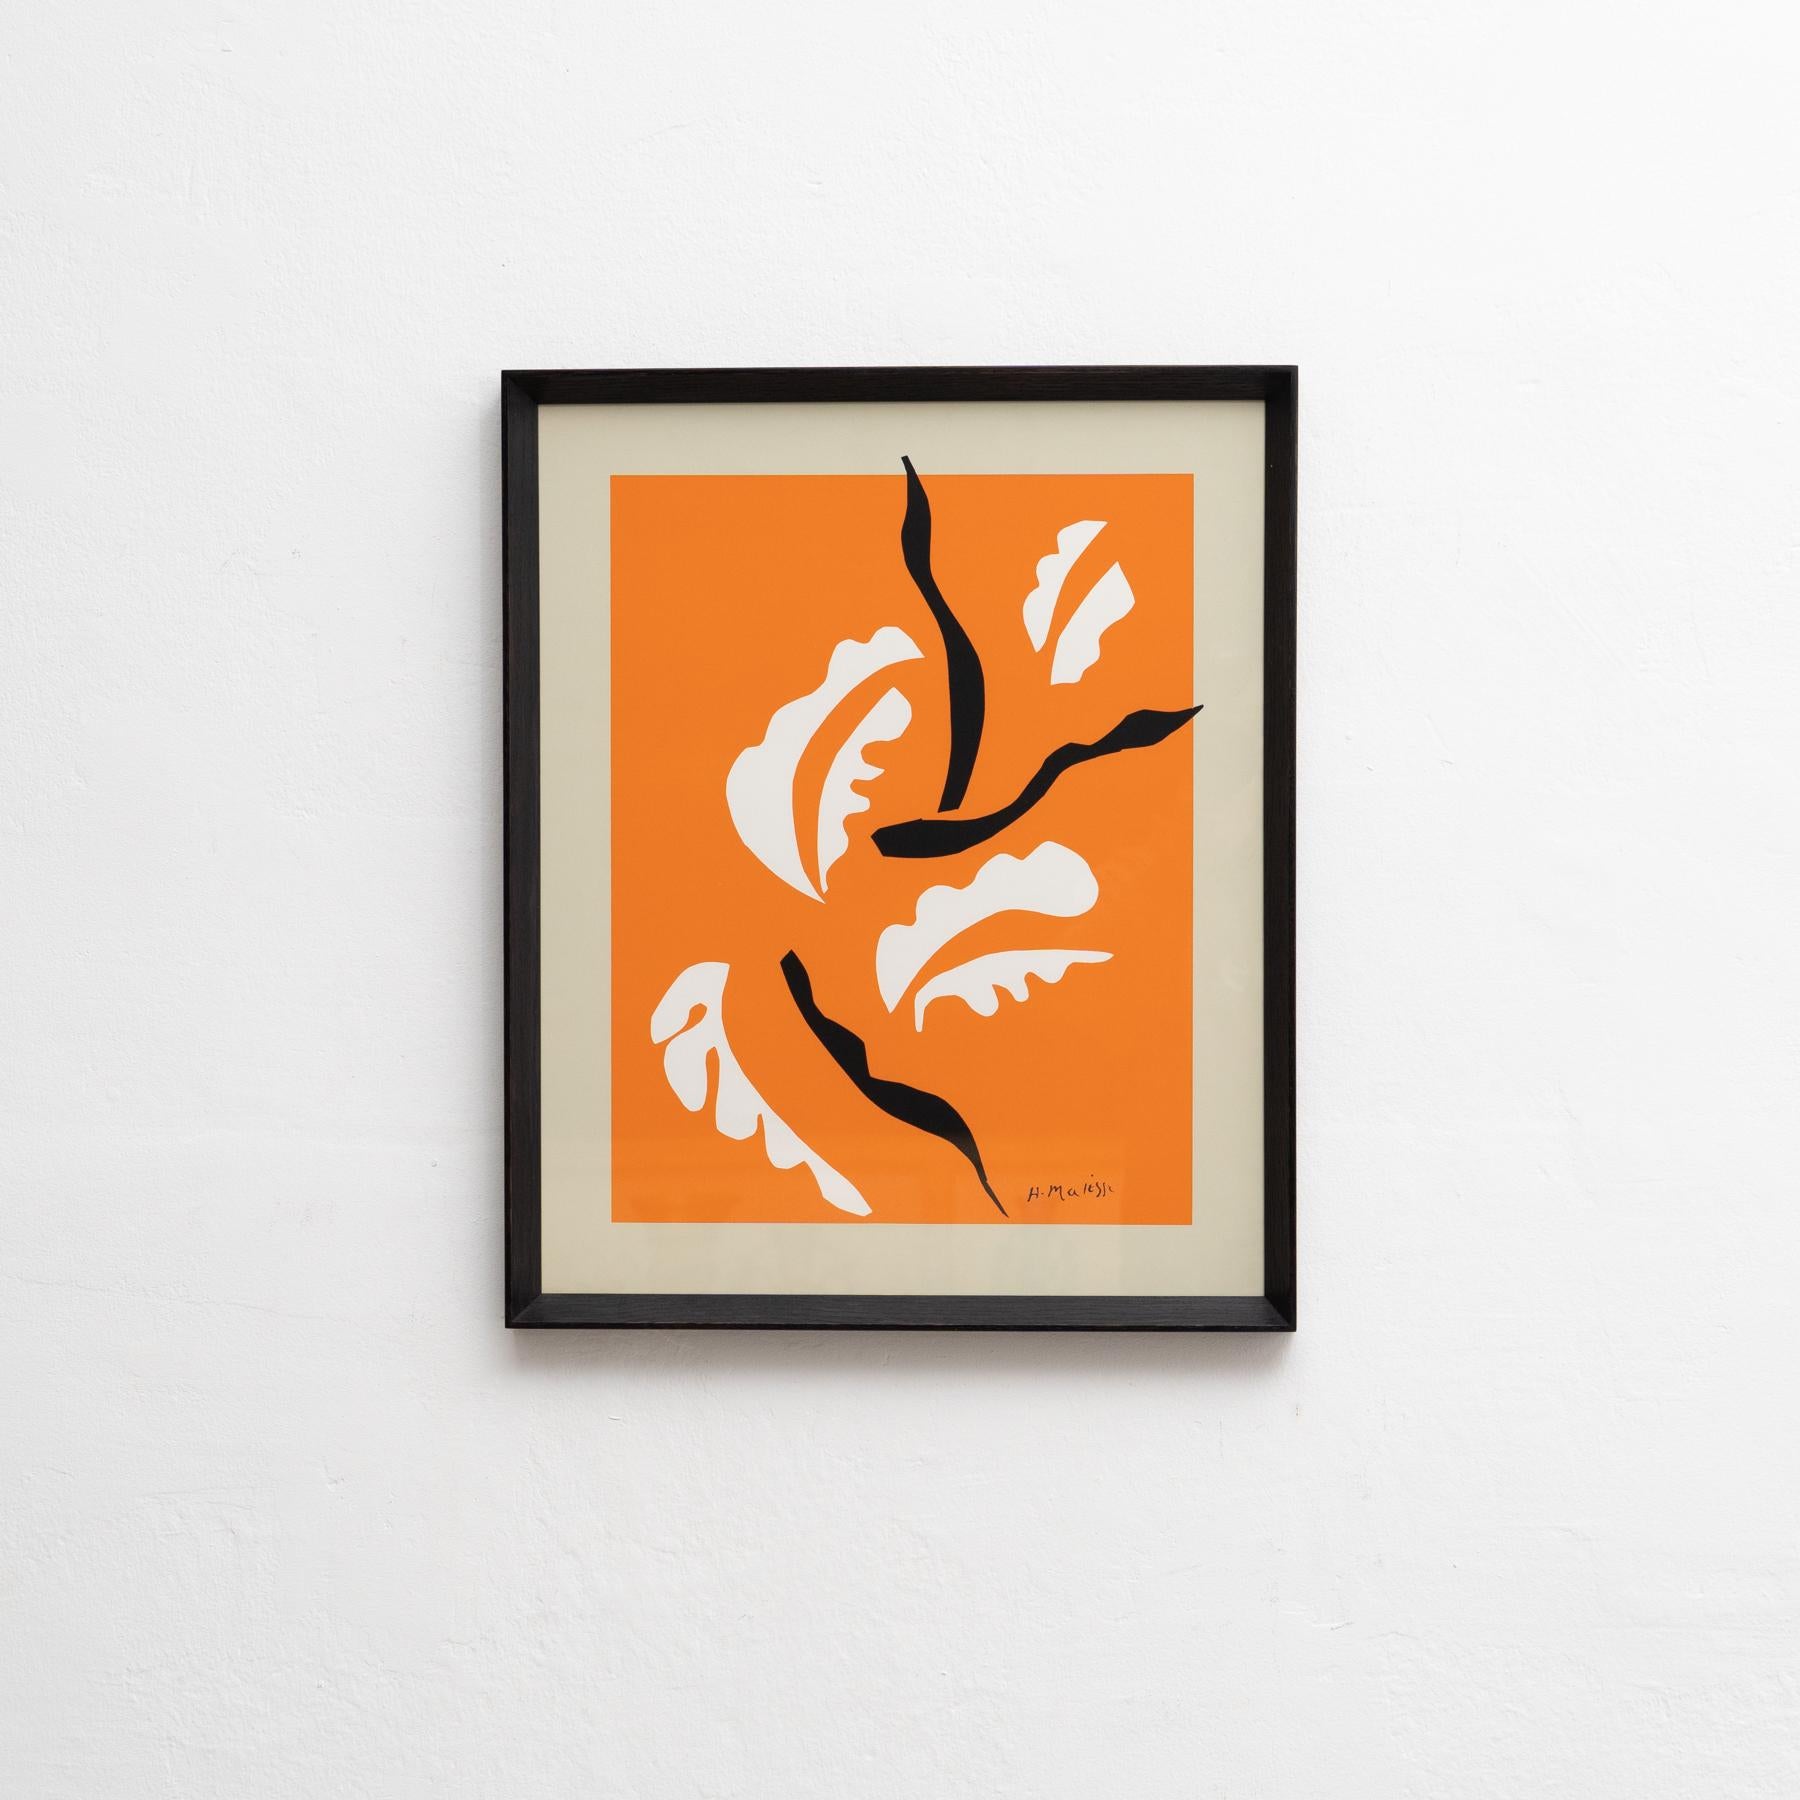 Farblithografie nach dem Werk von Henri Matisse,
Gerahmt auf hochwertigem Rahmen aus lackiertem Massivholz.

Im Stein signiert.

Henri Matisse, ob als Zeichner, Bildhauer, Grafiker oder Maler, Henri Matisse war ein Meister der Farbe. Obwohl er an